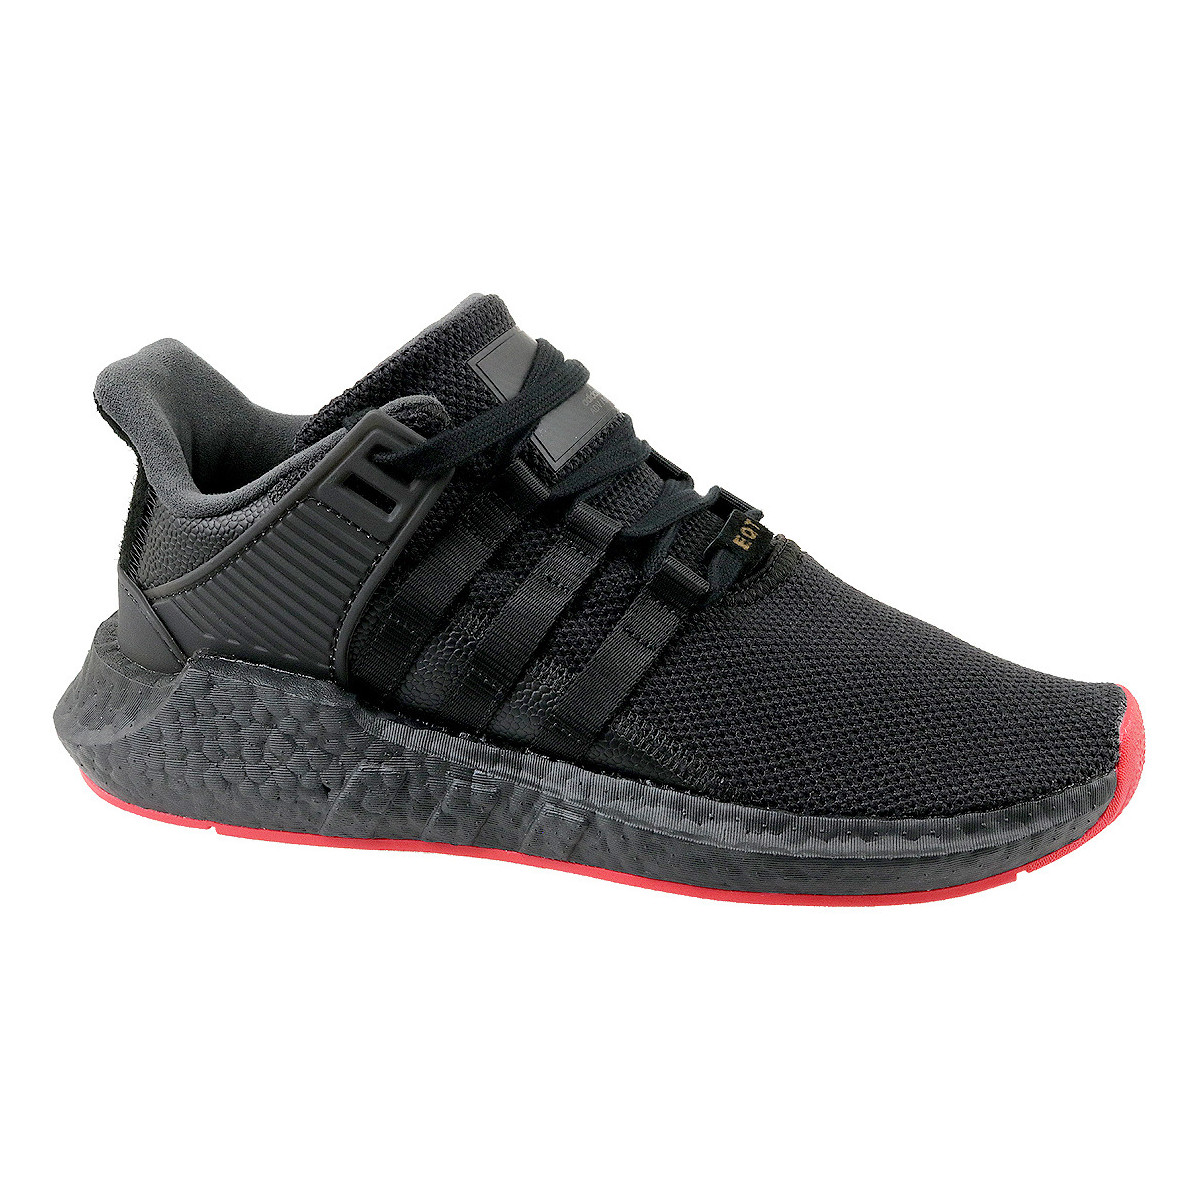 Παπούτσια Χαμηλά Sneakers adidas Originals adidas EQT Support 93/17 Black